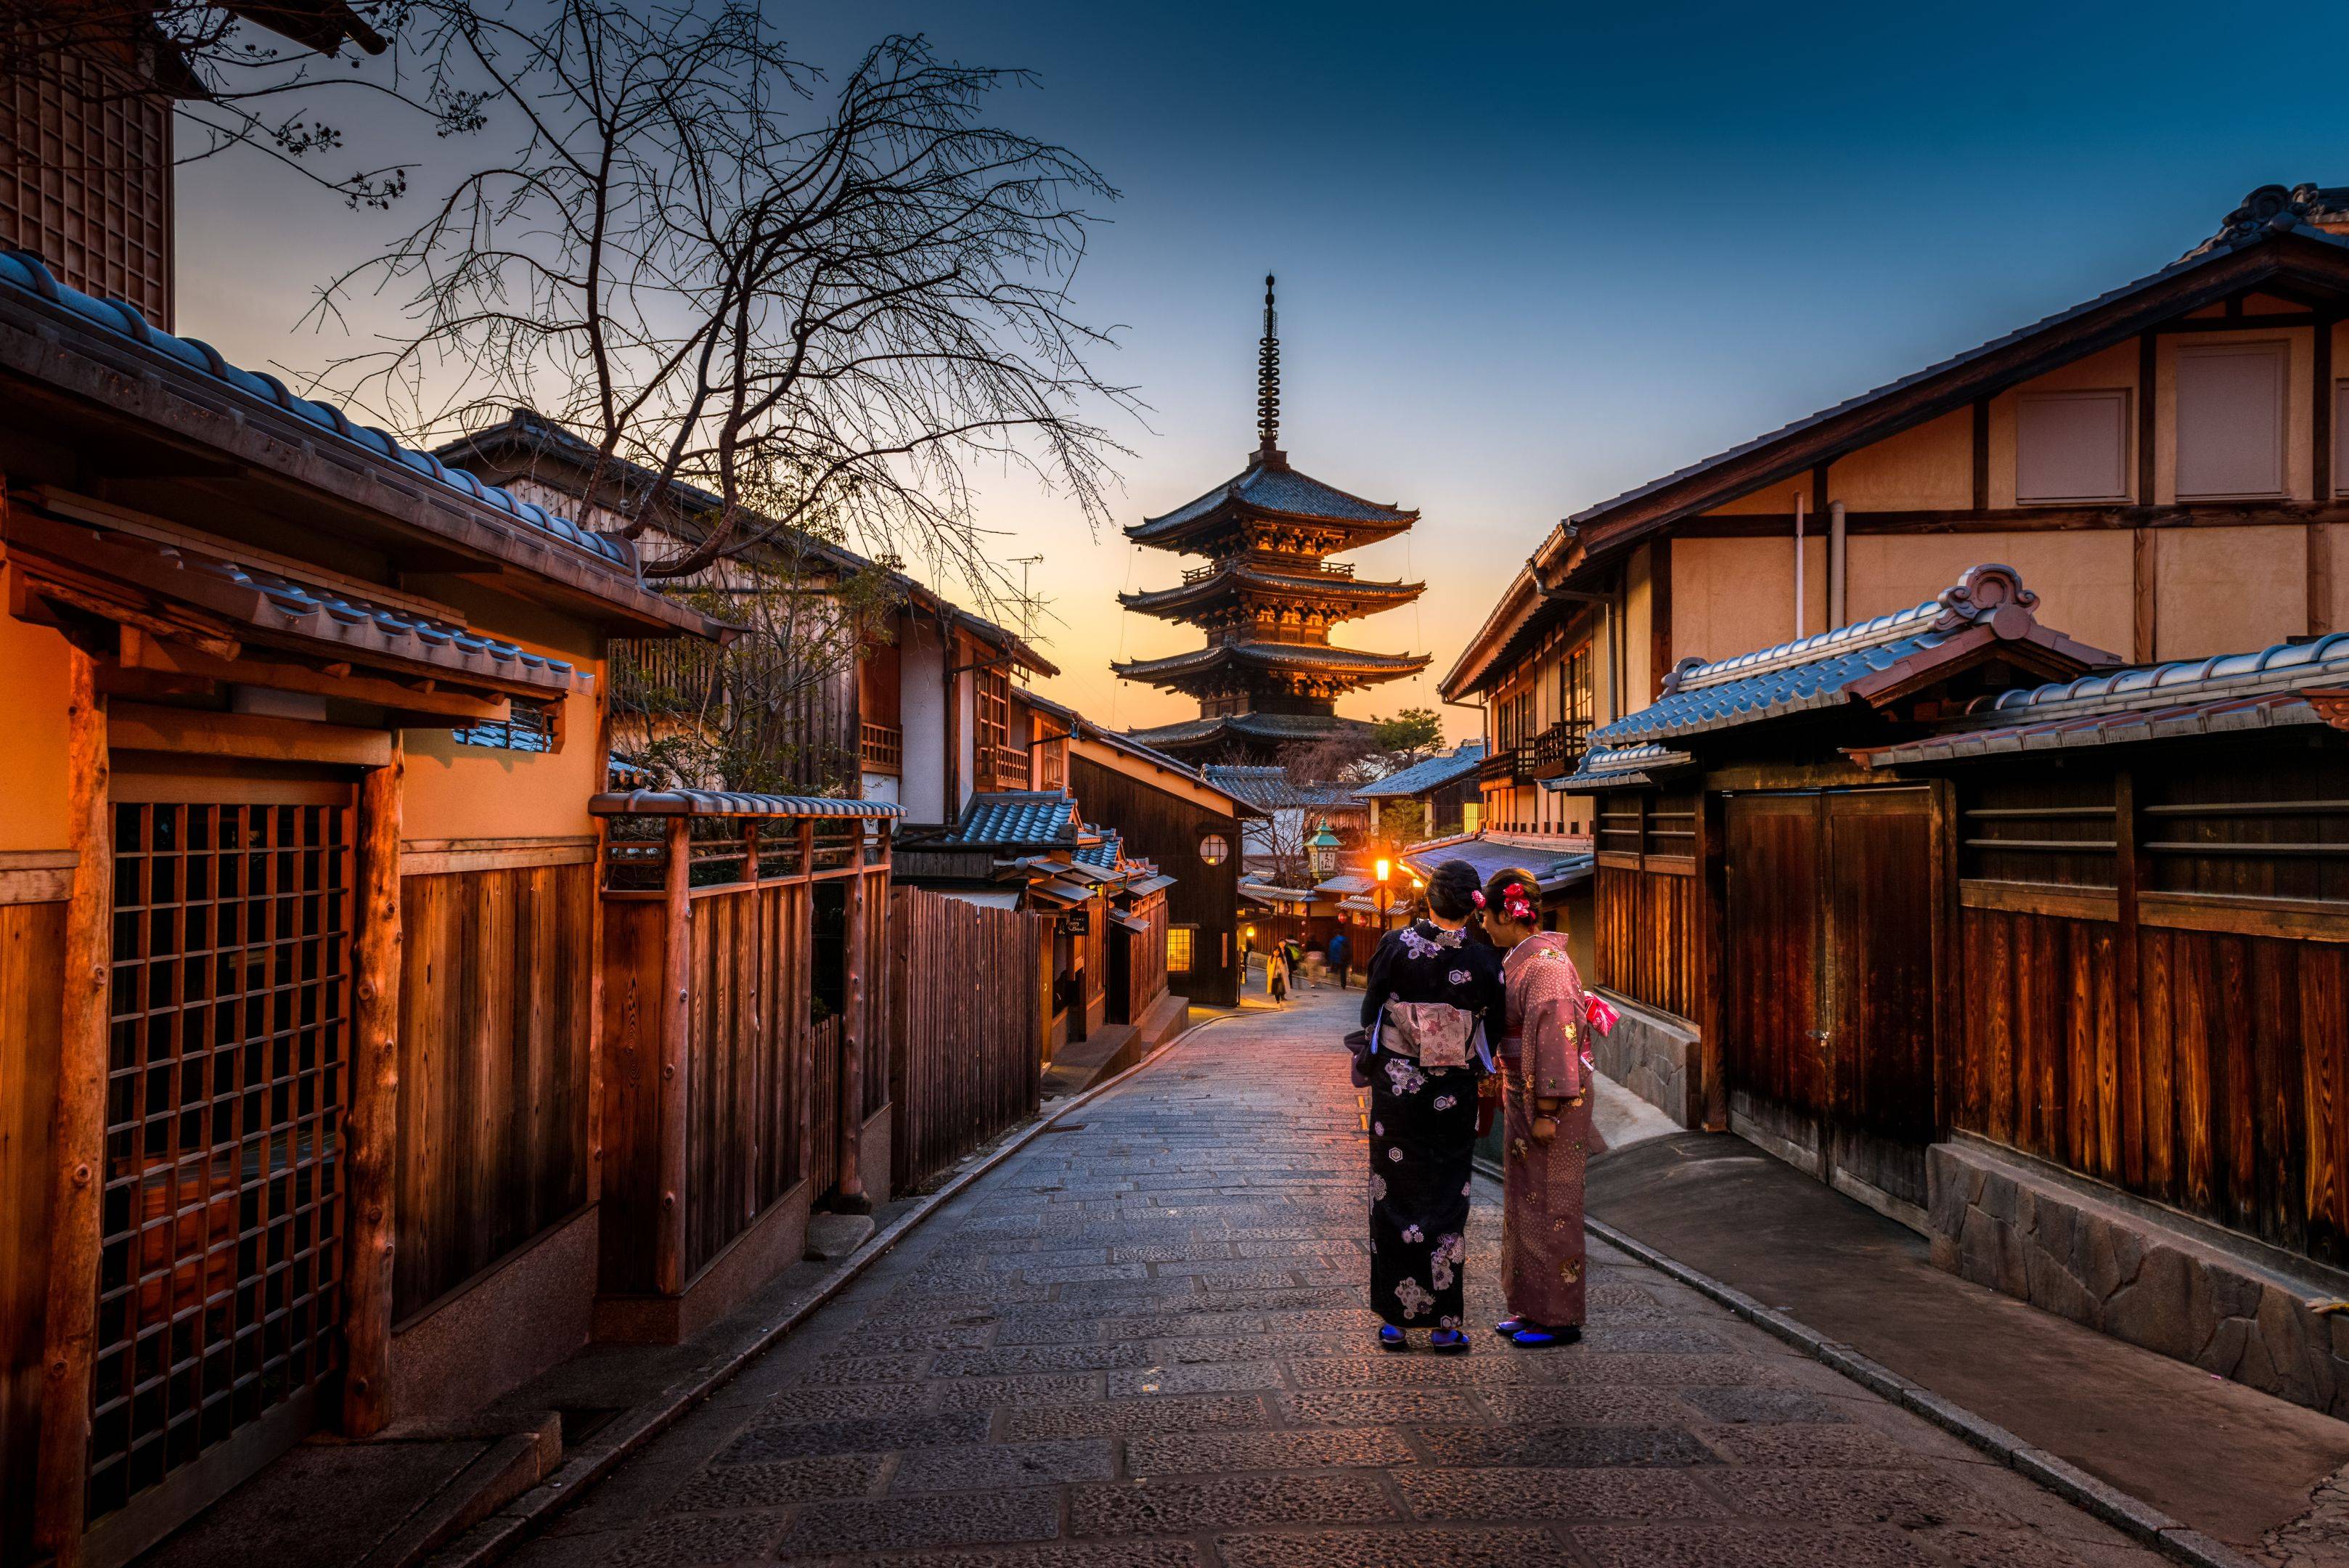 Viaggio verso il cuore delle antiche tradizioni: Kyoto e la magia della cerimonia del tè